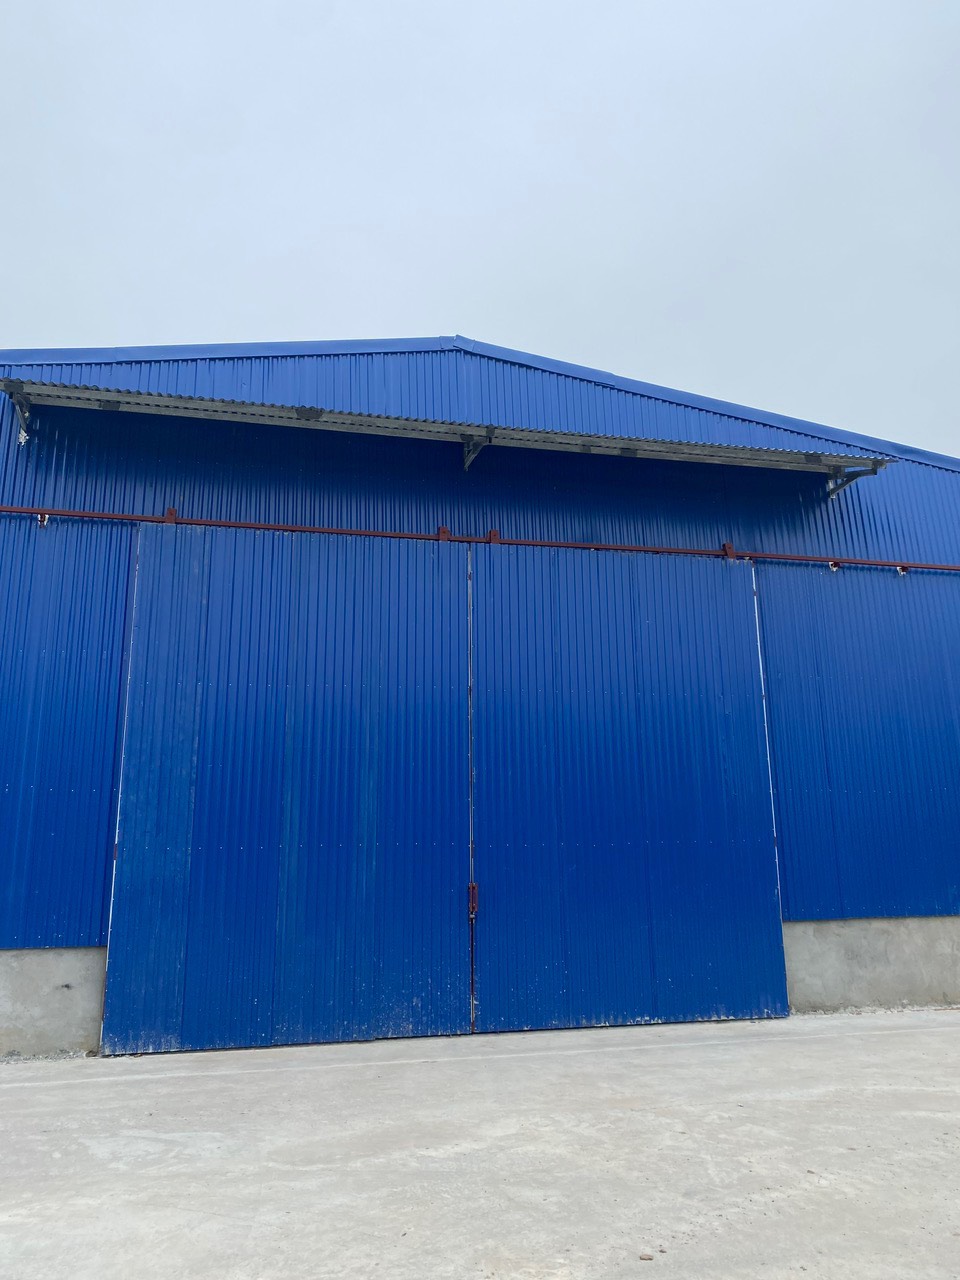 TOPLAND cho thuê kho xưởng sản xuất 1500m tại đường QL5 Hải Phòng.